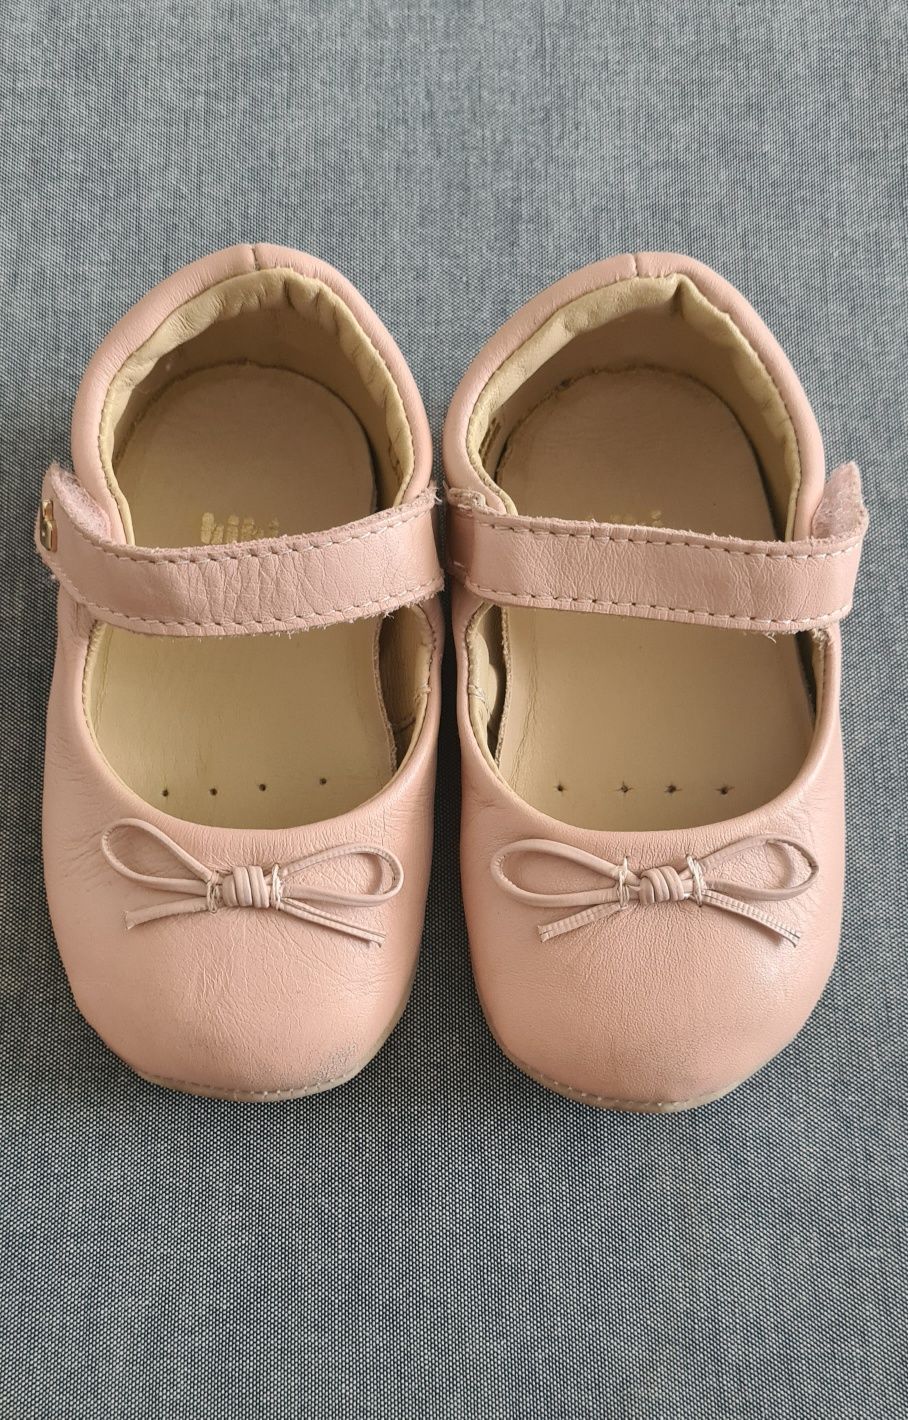 Pantofi fete Bibi shoes Afeto Joy pink